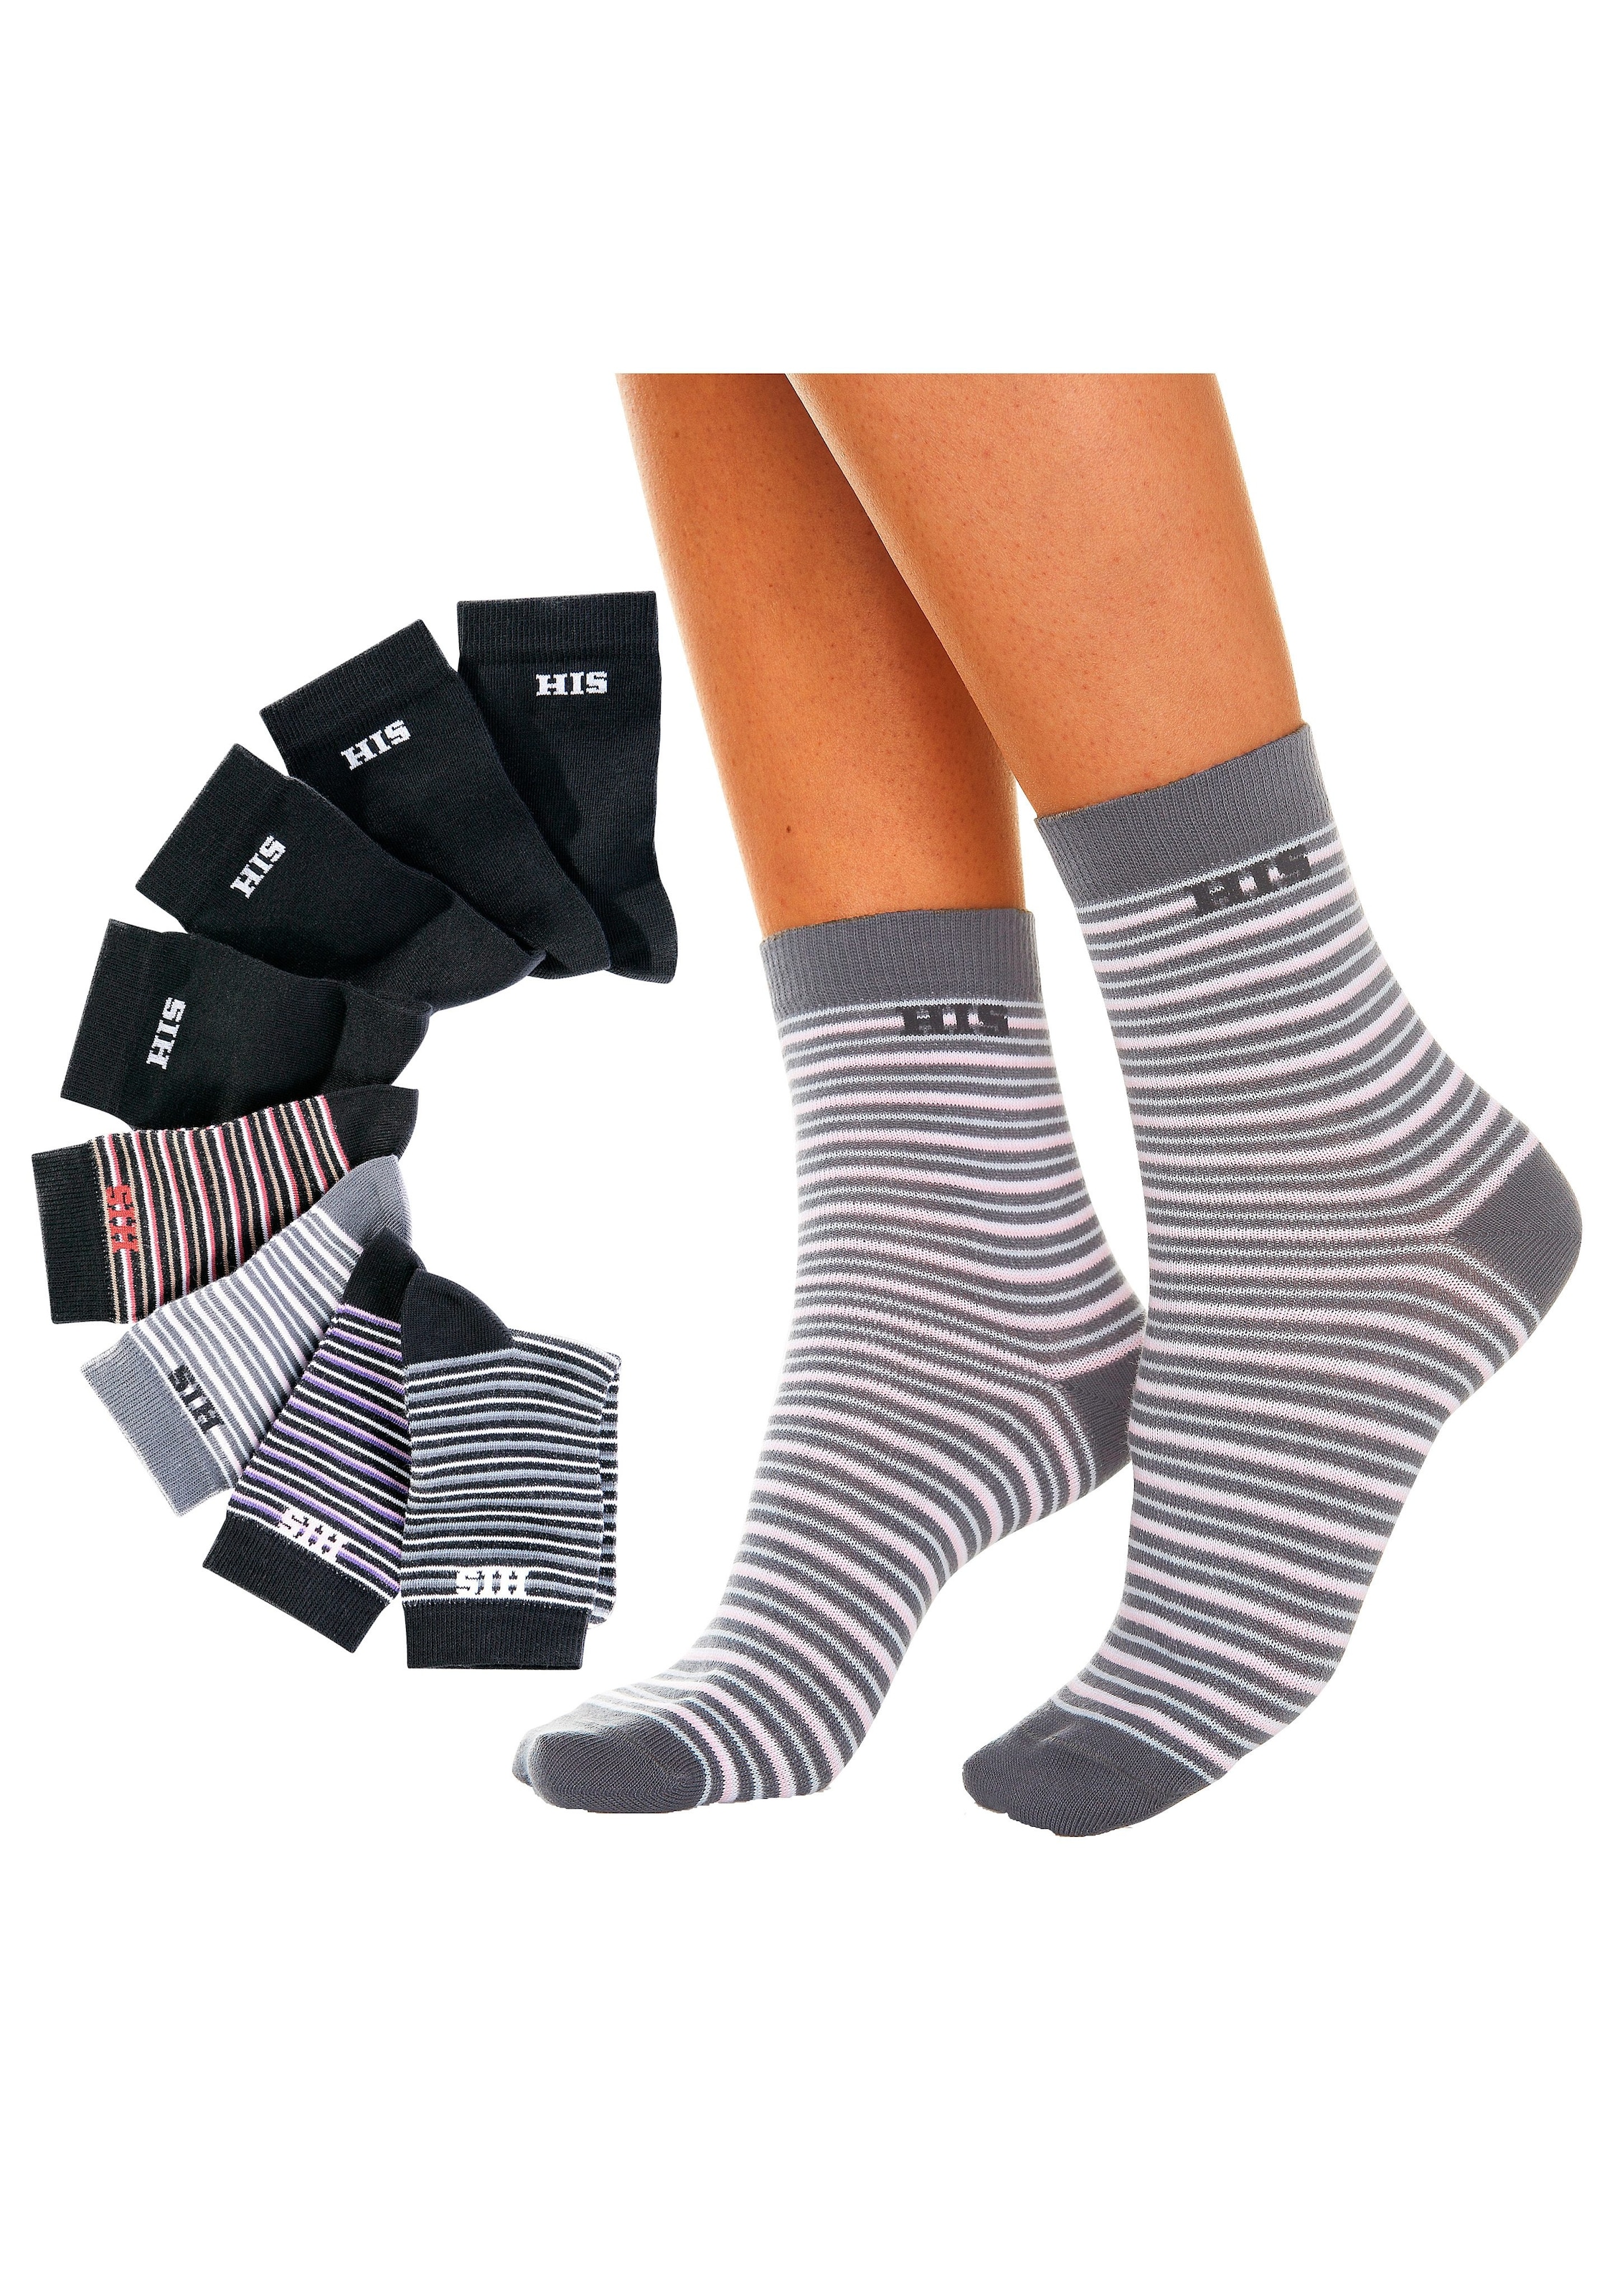 H.I.S Socken, (Set, walking I\'m | 8 unifarben kaufen geringelt Paar), und